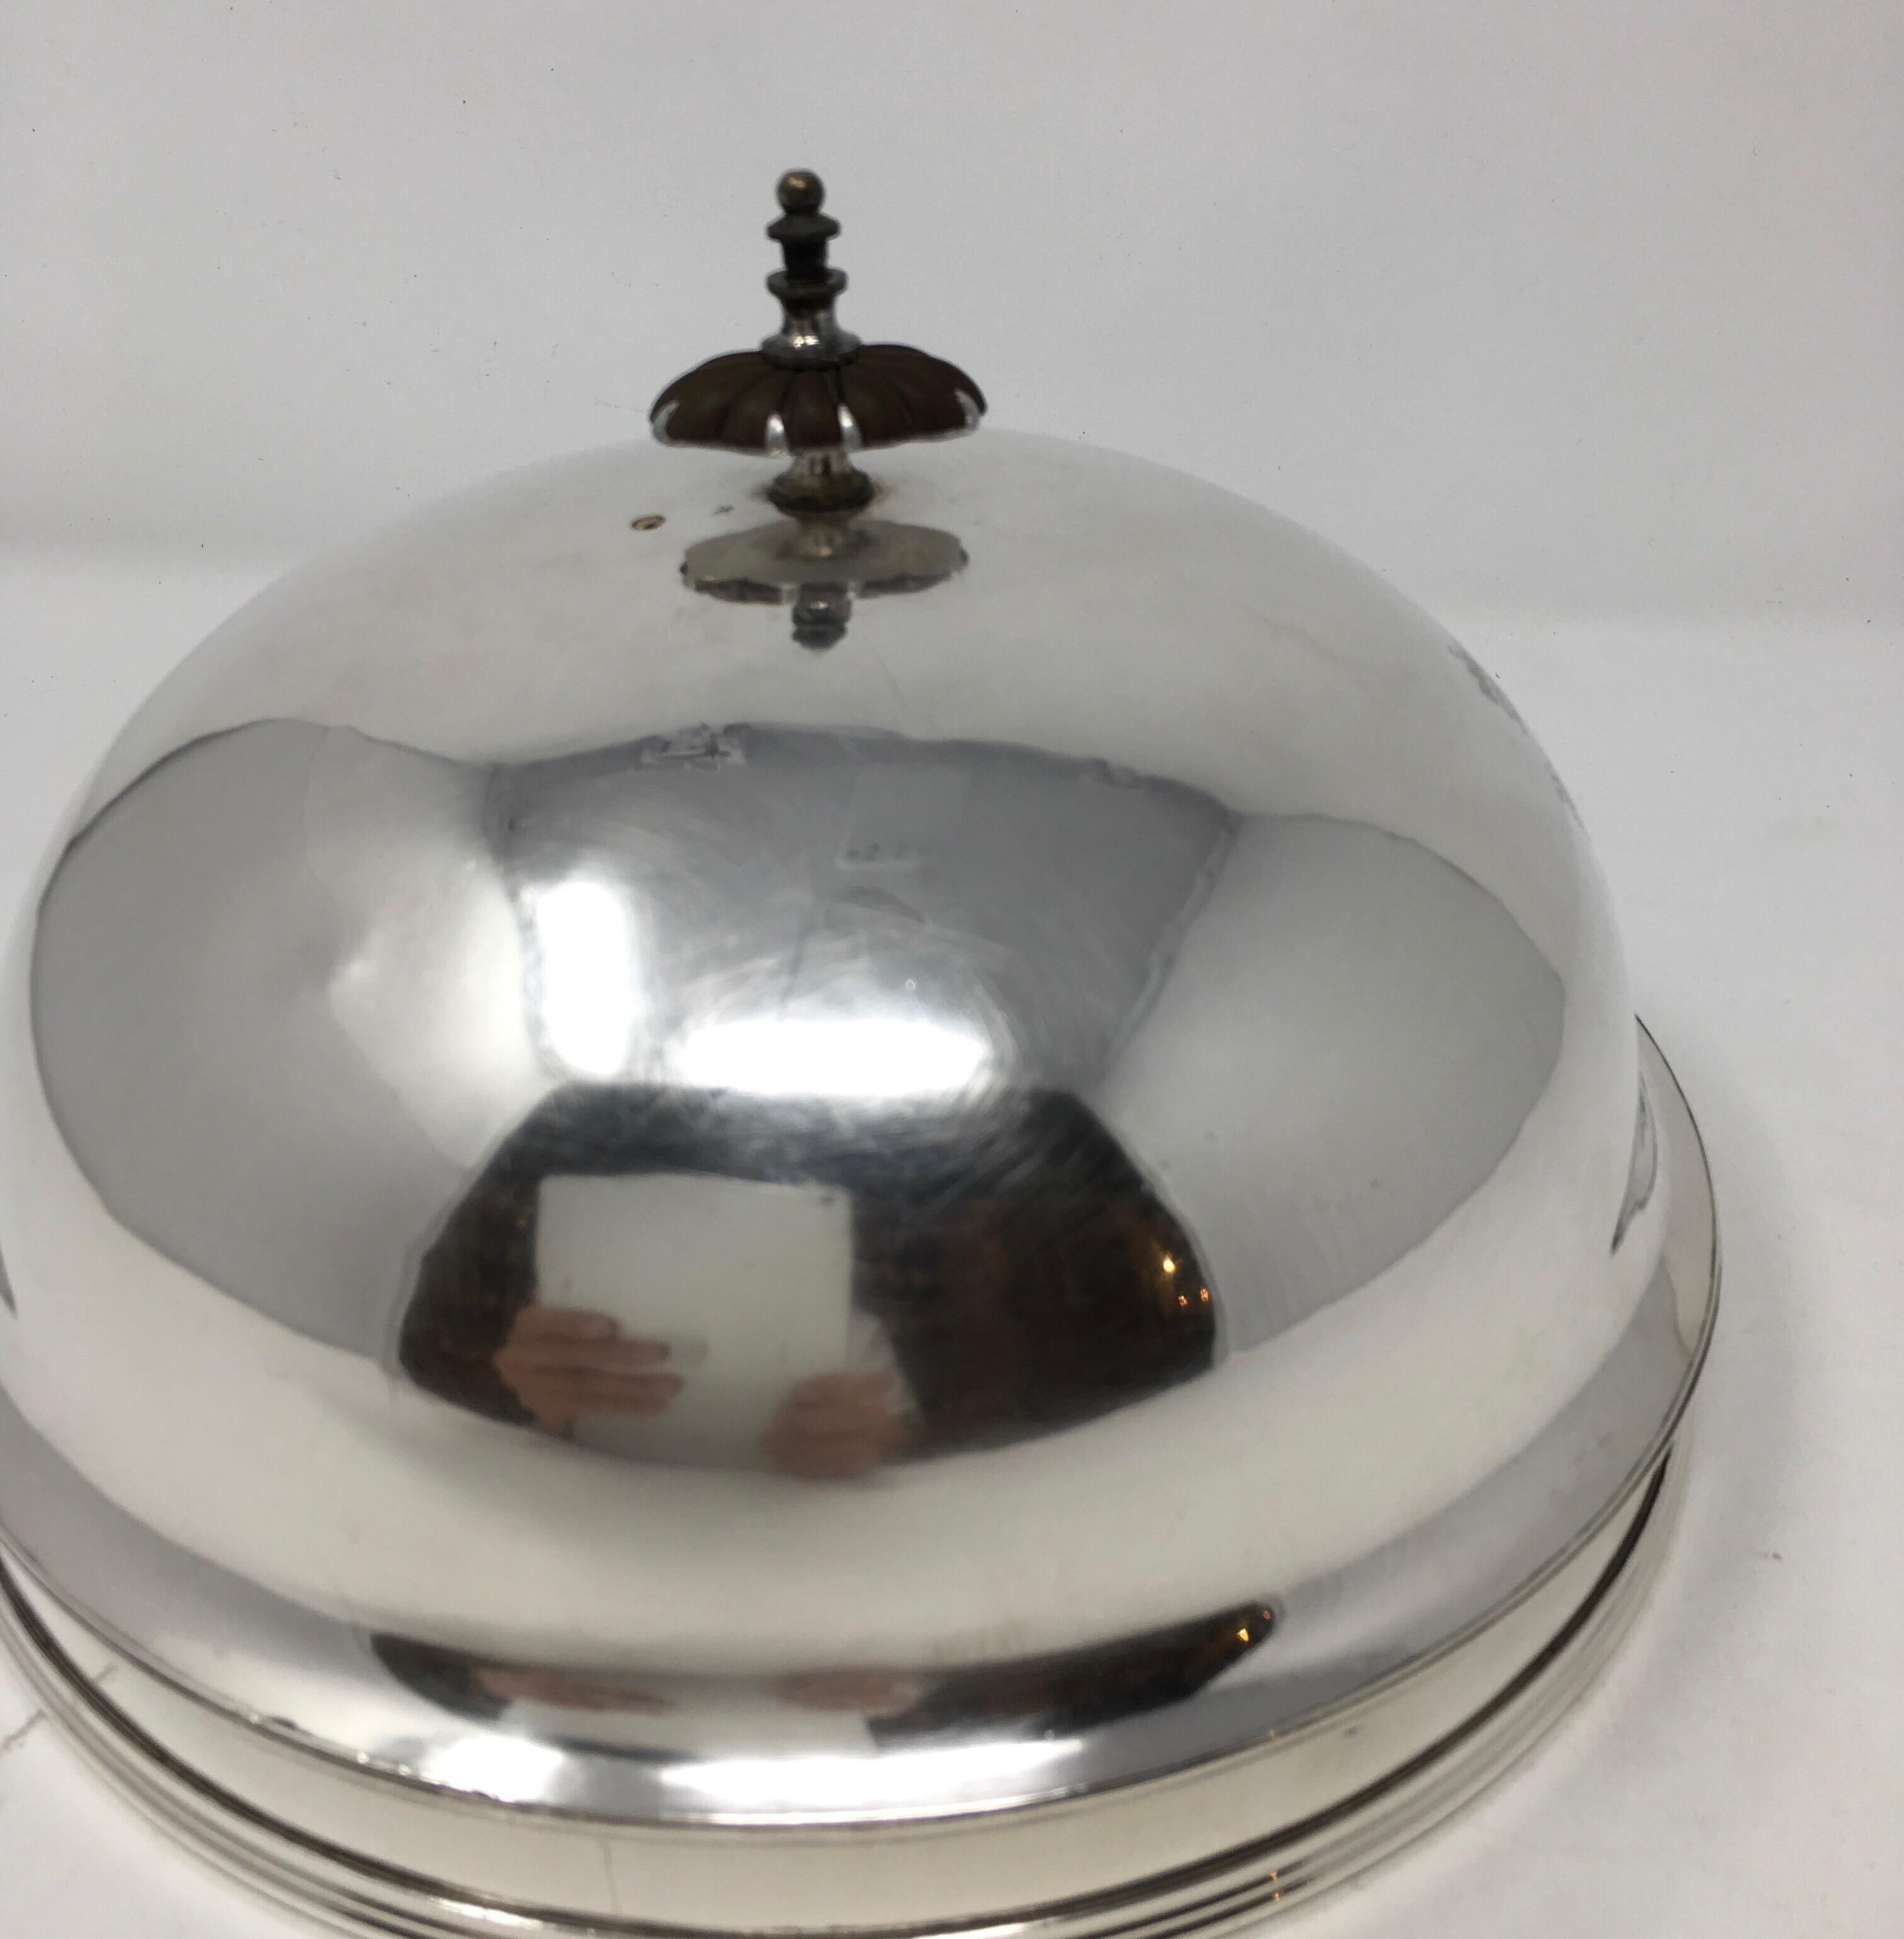 Diese Vintage-Hotel Silber Essen Kuppel gefunden in Frankreich ist mit einer Krone, Drache und Hirsch, wie abgebildet markiert. Schöne Patina mit geringem Verschleiß wie erwartet.